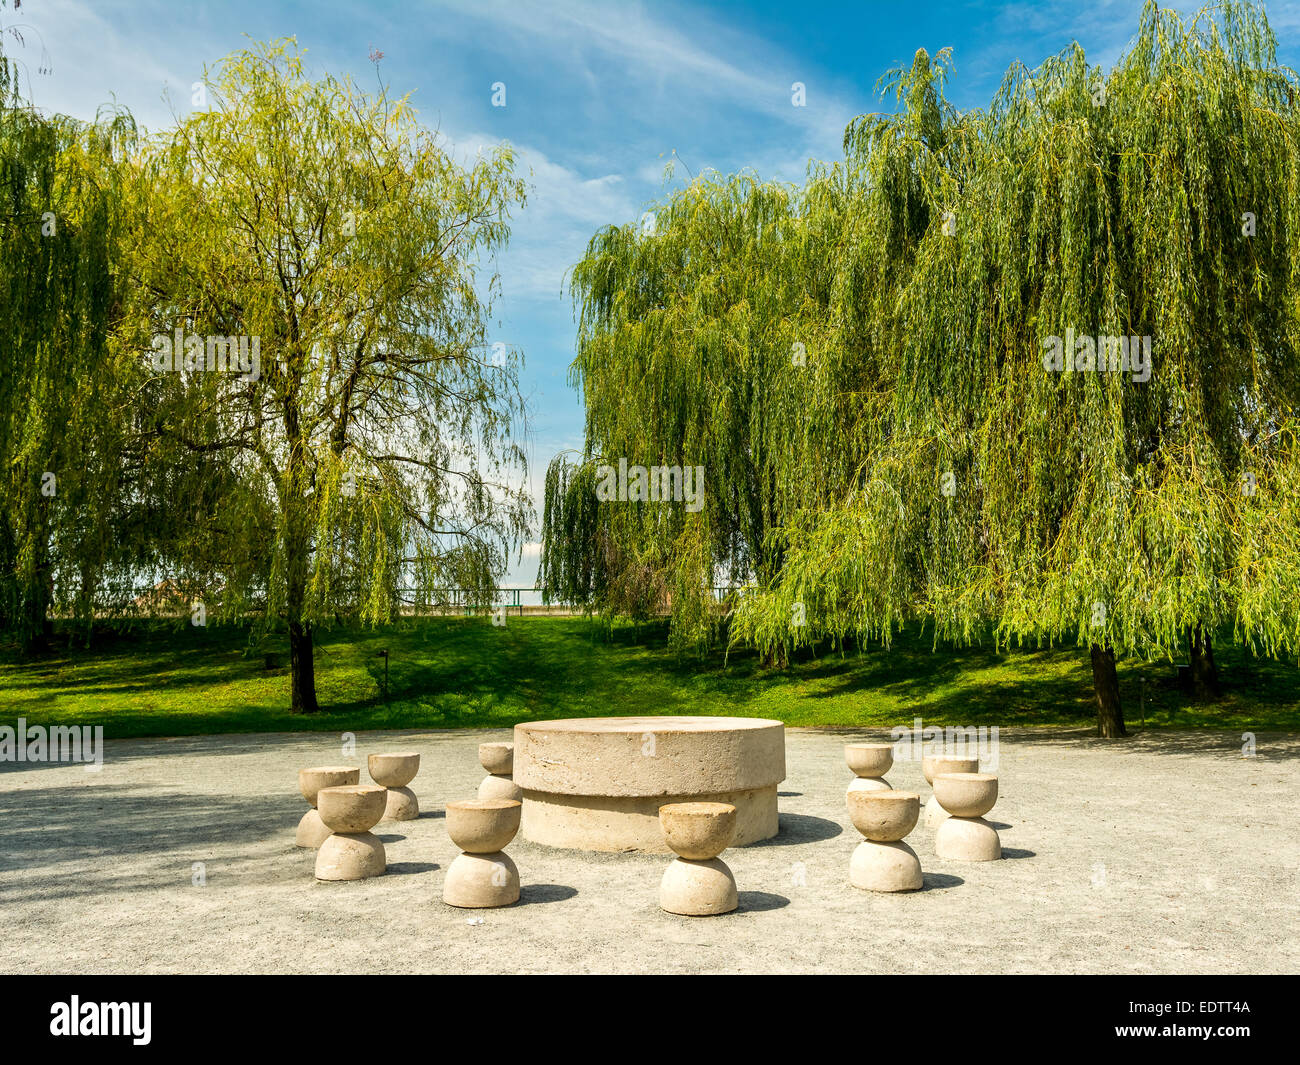 La Table du silence est une sculpture en pierre faite par Constantin Brancusi en 1938 à Oradea, Roumanie. Banque D'Images